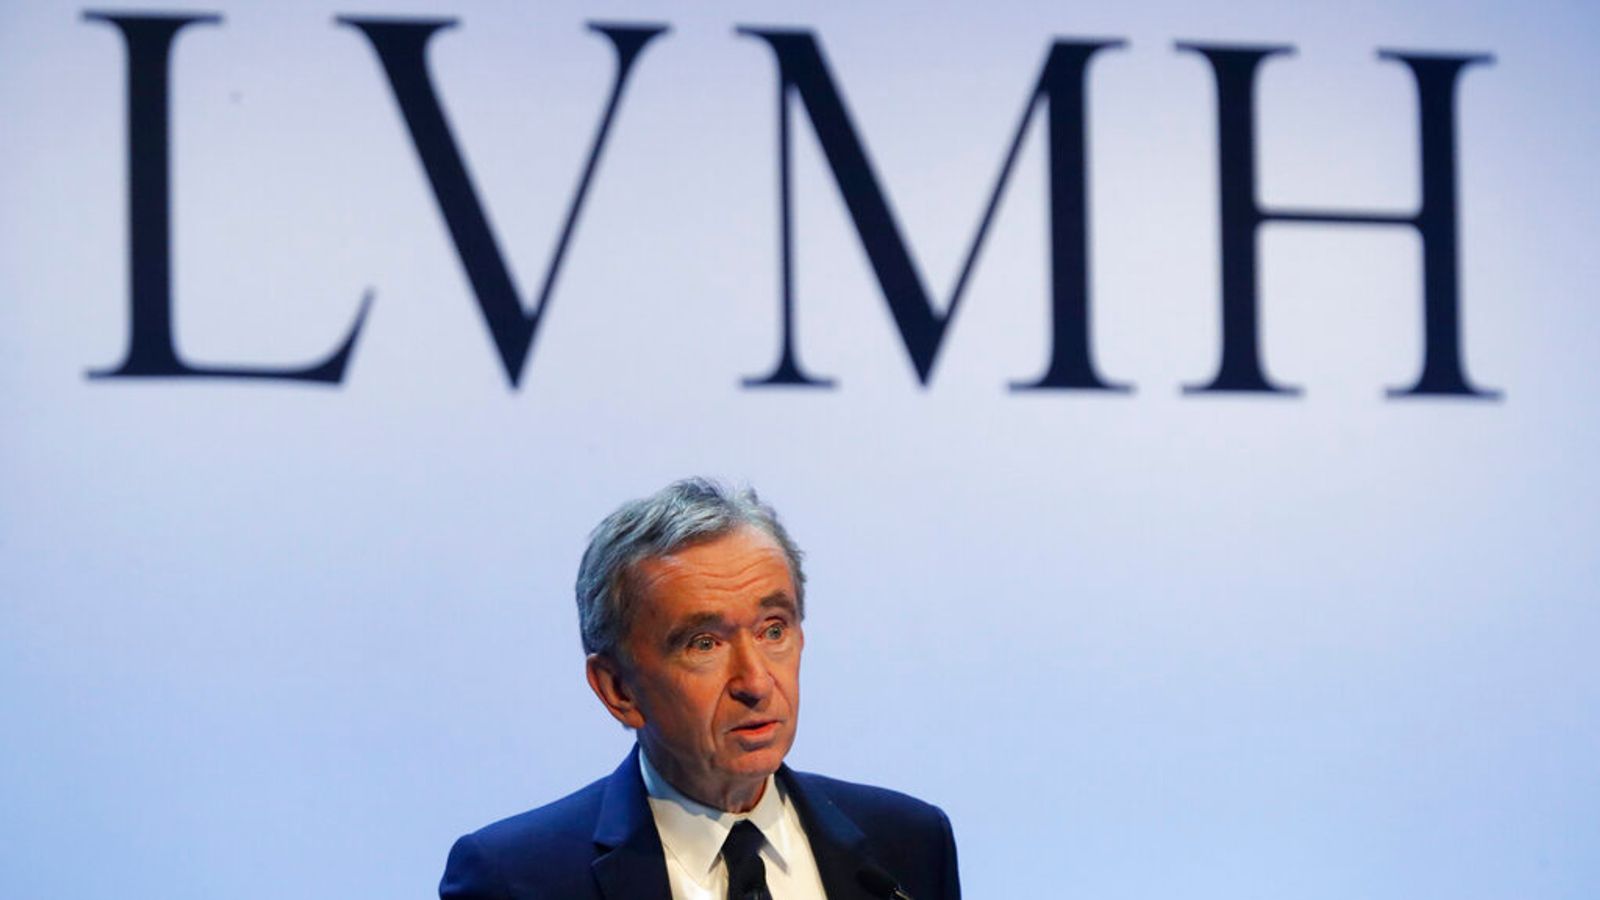 LVMH : Hausse des ventes de l’entreprise de luxe dirigée par Bernard Arnault, l’homme le plus riche du monde |  Actualité économique